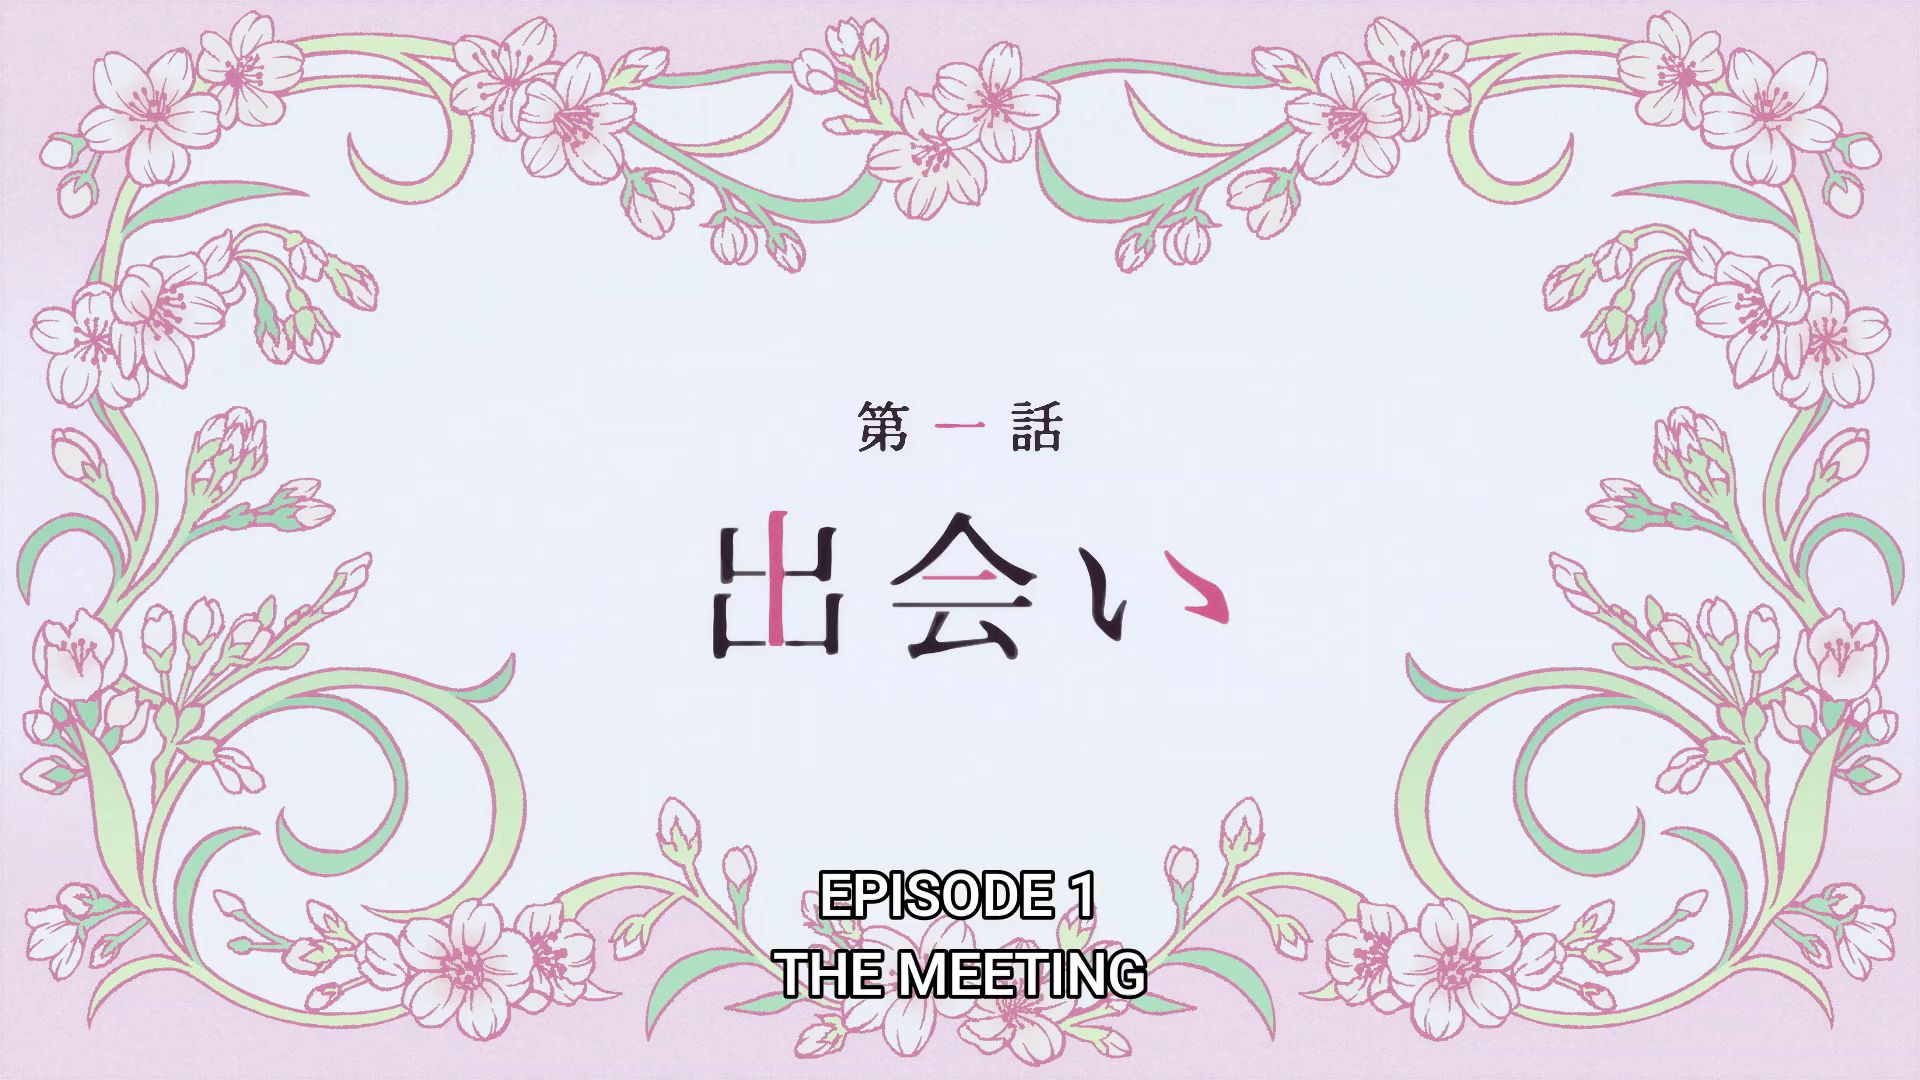 Assistir Watashi no Shiawase na Kekkon Episódio 1 » Anime TV Online